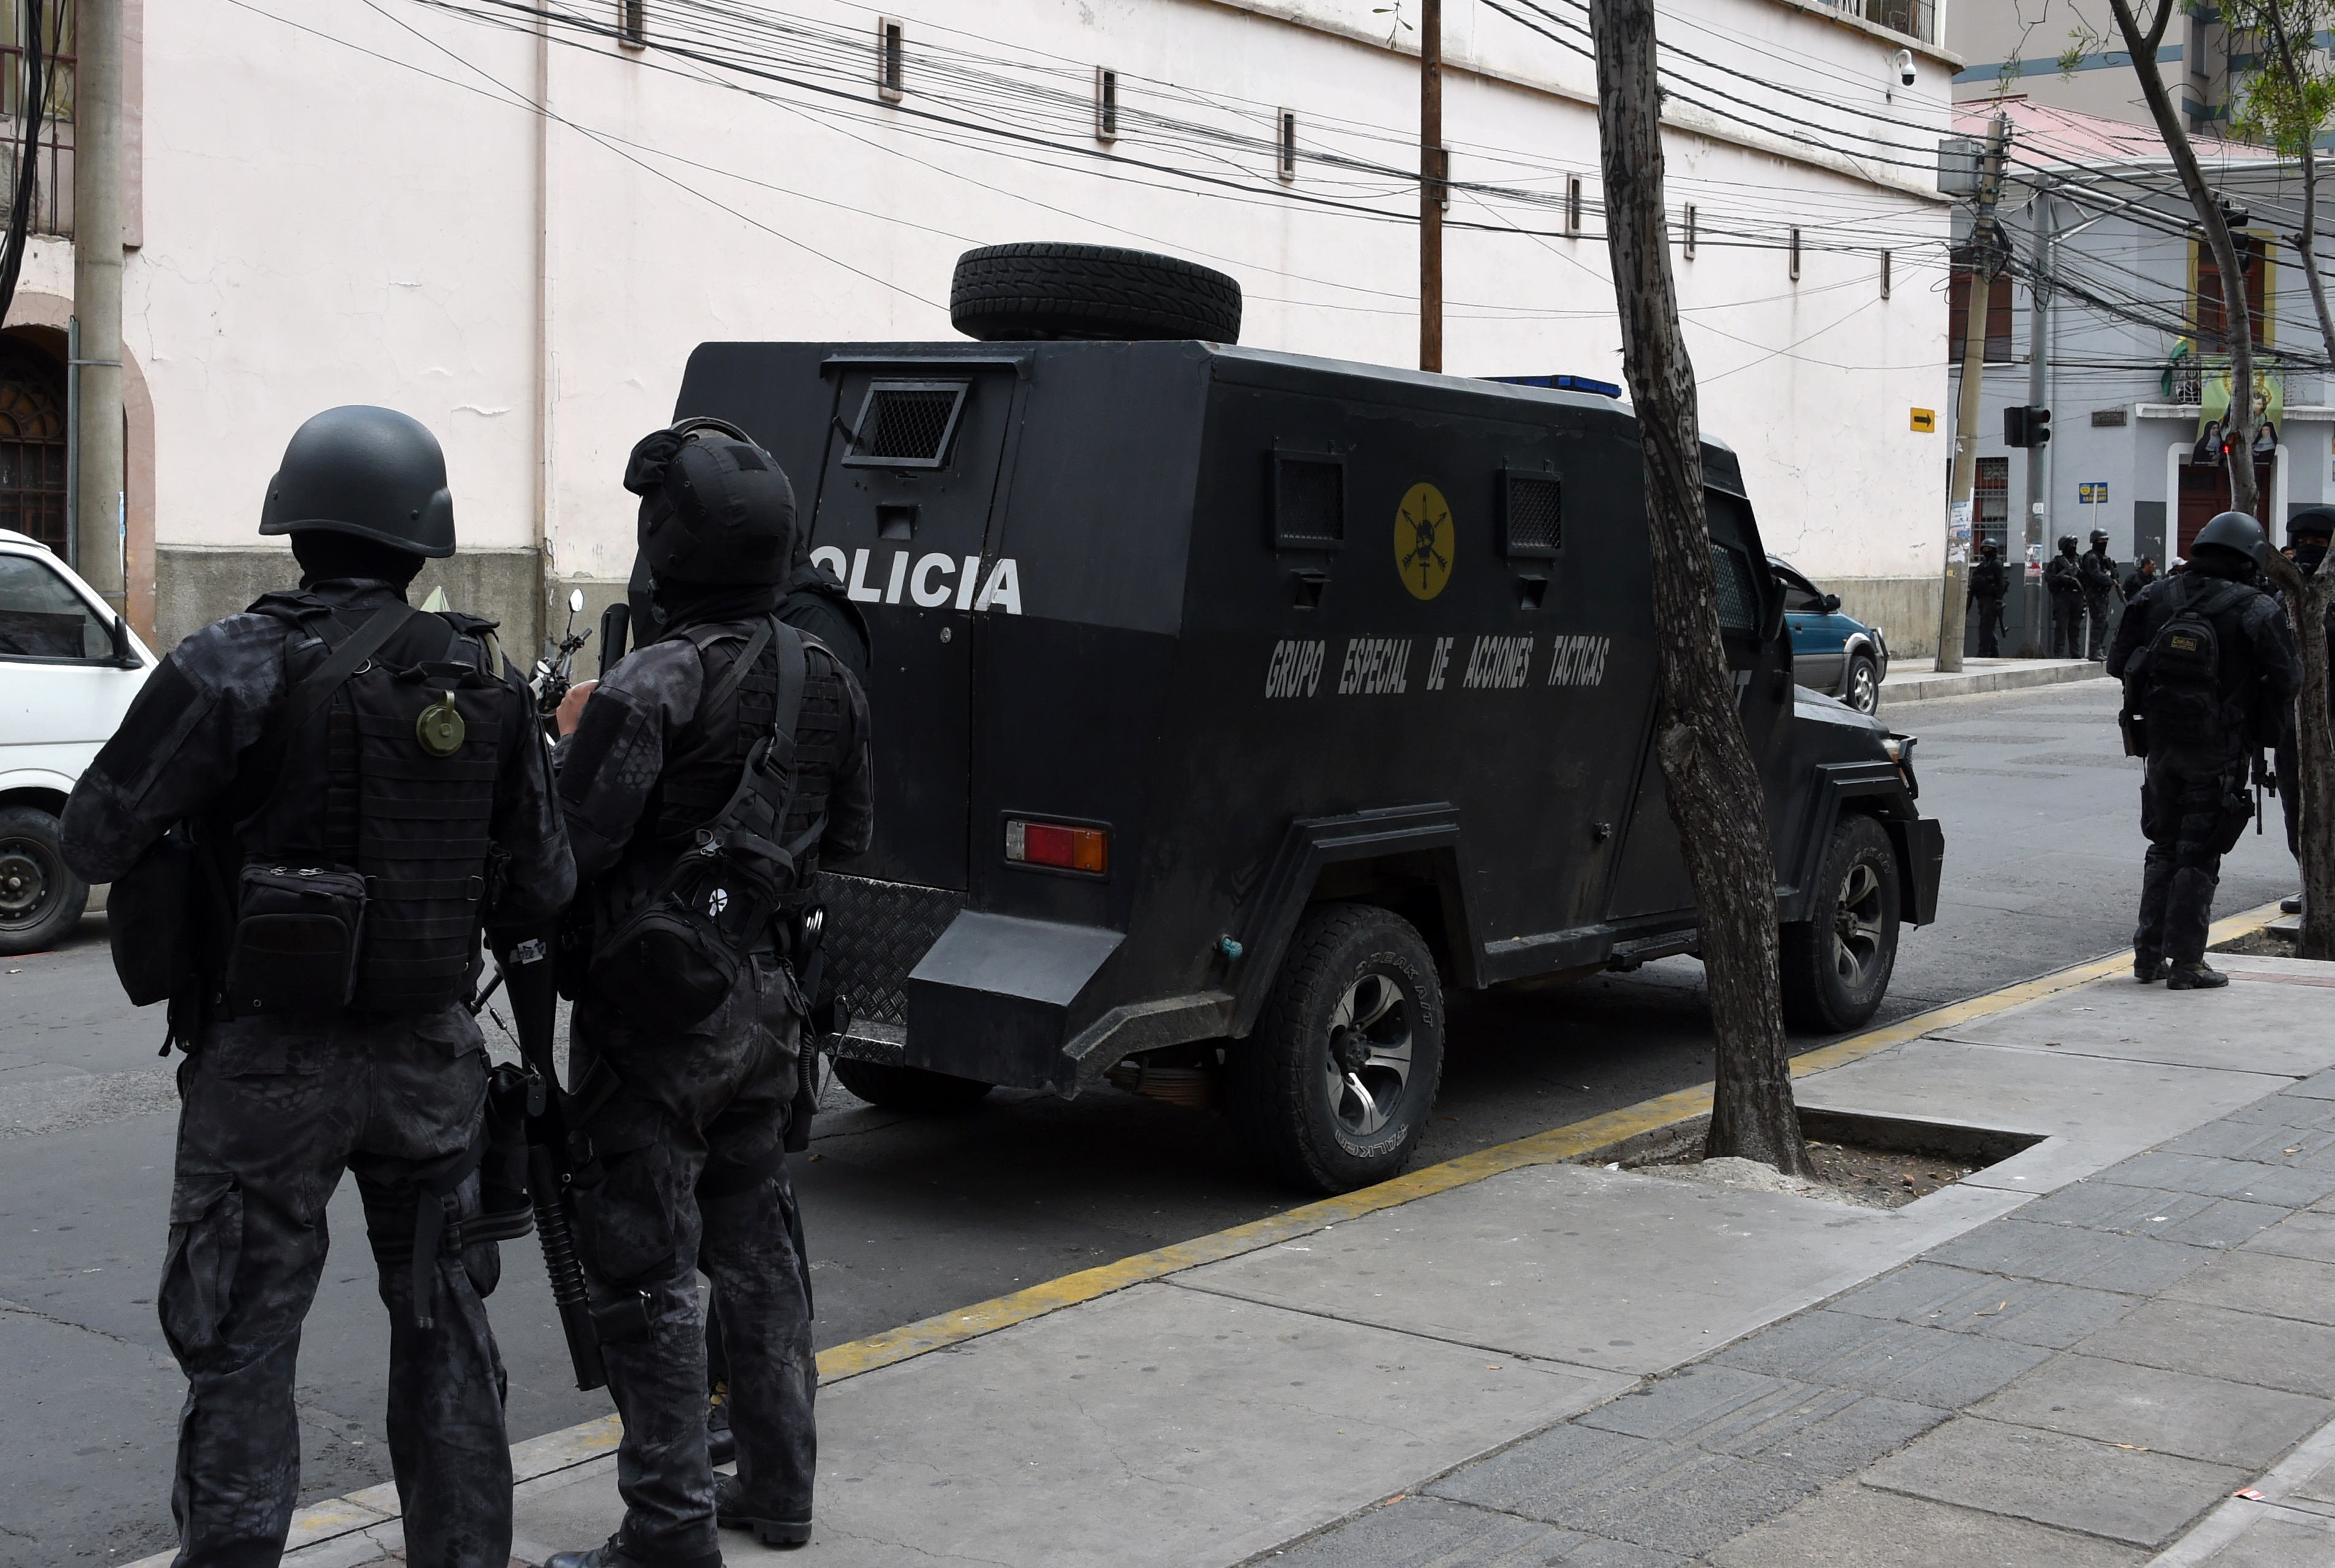 Presos se amotinan en cárcel de La Paz en medio de crisis política